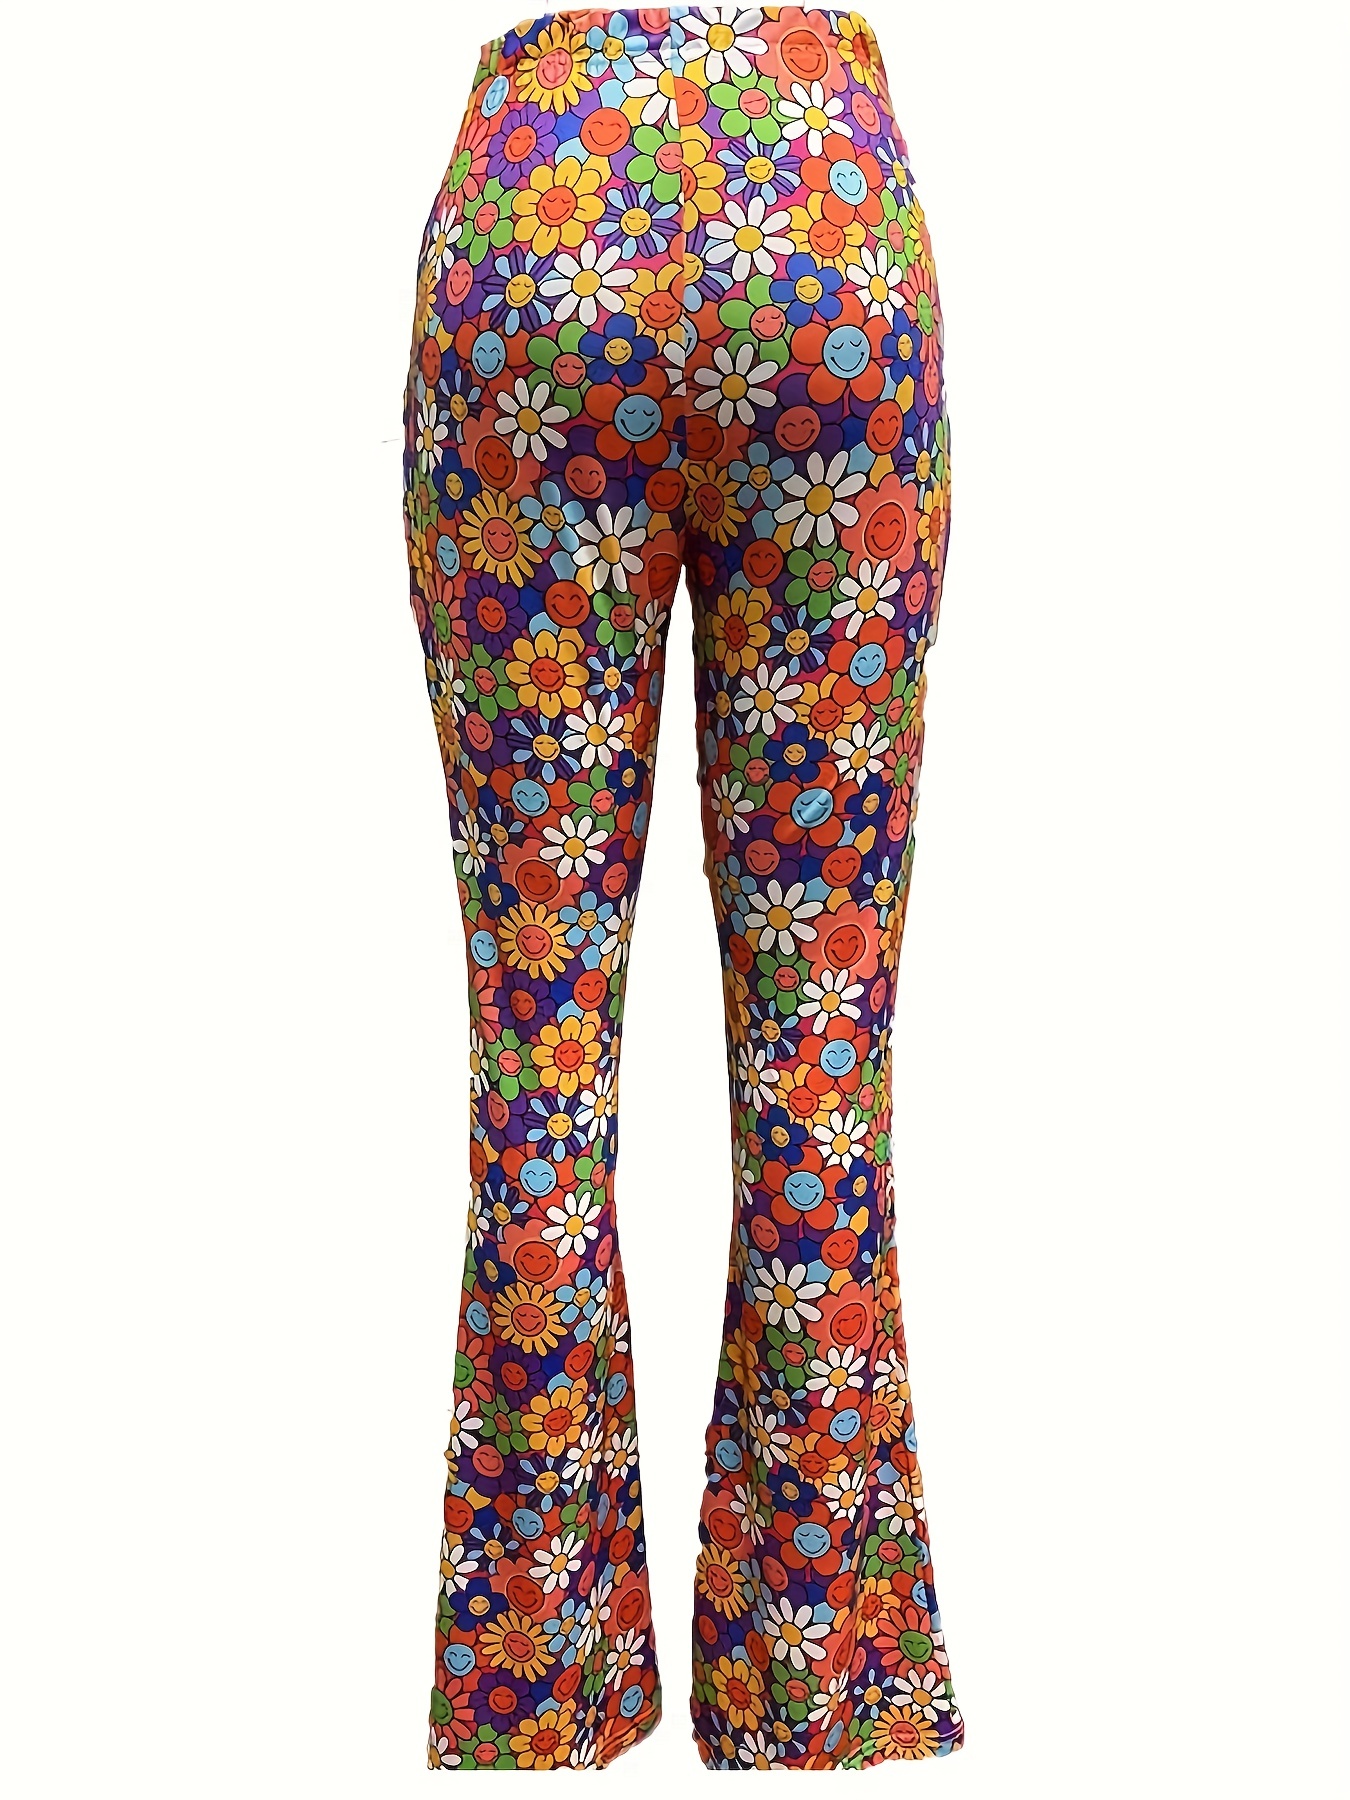 Women's 70's Flower Bell Bottom Pants